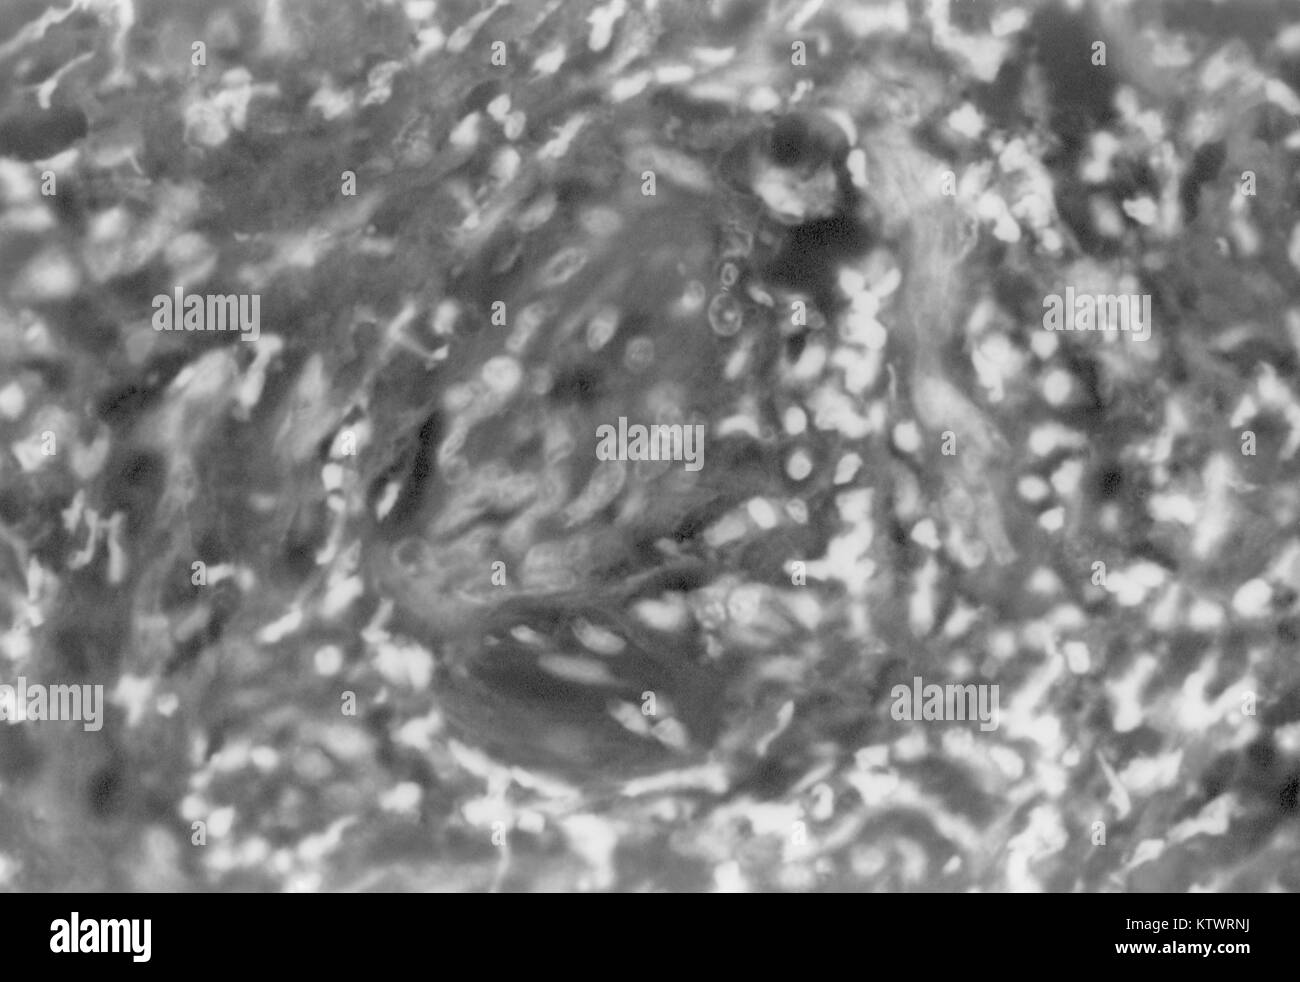 Eine photomicrograph eines Condyloma latum Läsion, bezeichnend für sekundäre Syphilis. Pathognomonisch Ergebnisse hier gesehen markiert die endotheliale Proliferation, und perivaskuläre entzündliche cuffing bezeichnenderweise in der Dermis gesehen, HandE Färbung Technik, Vergrößerung 400X, 1971. Mit freundlicher CDC/Susan Lindsley. Stockfoto